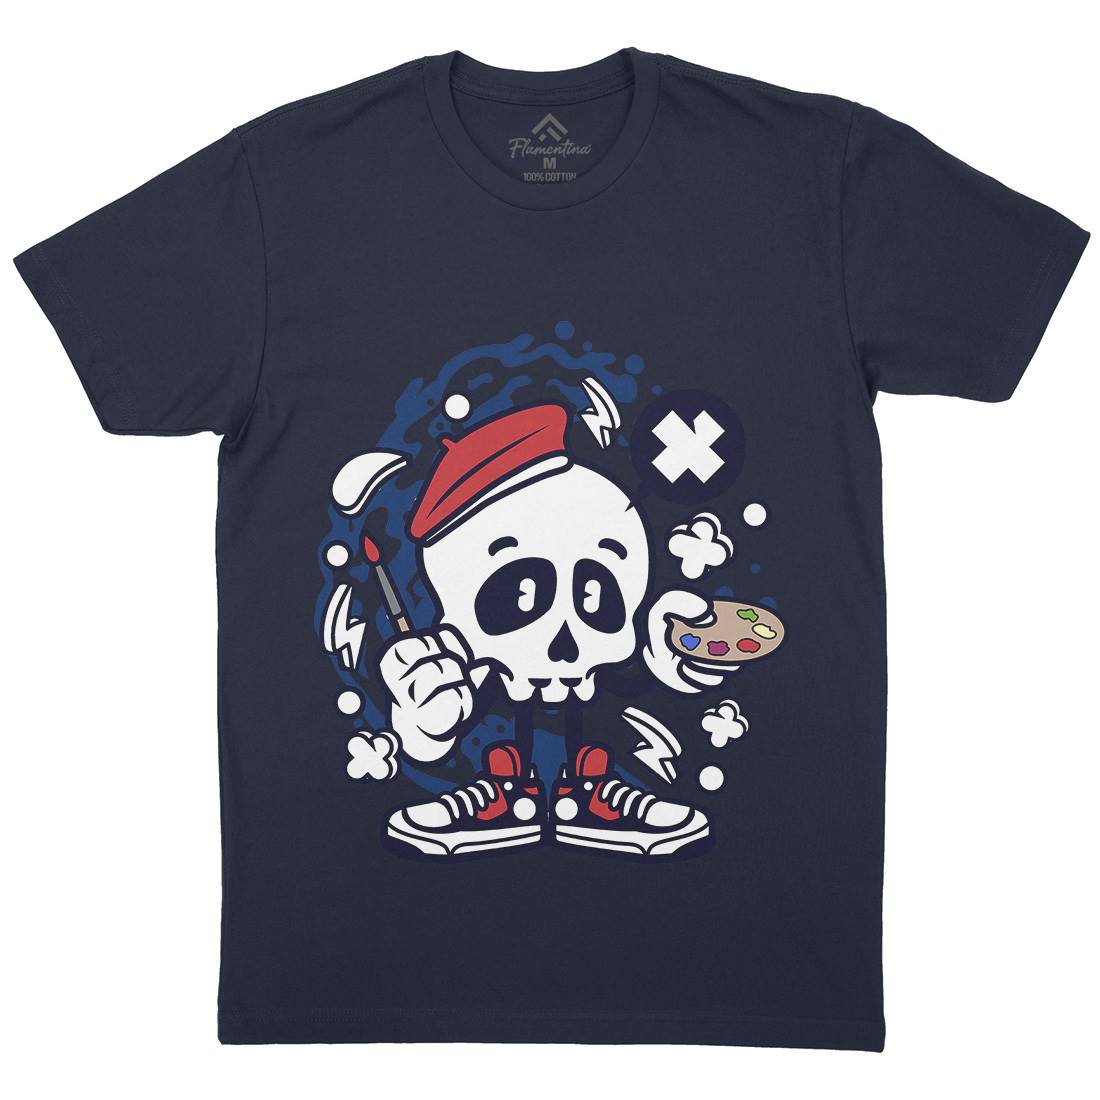 Painter Skull Mens Crew Neck T-Shirt Retro C183